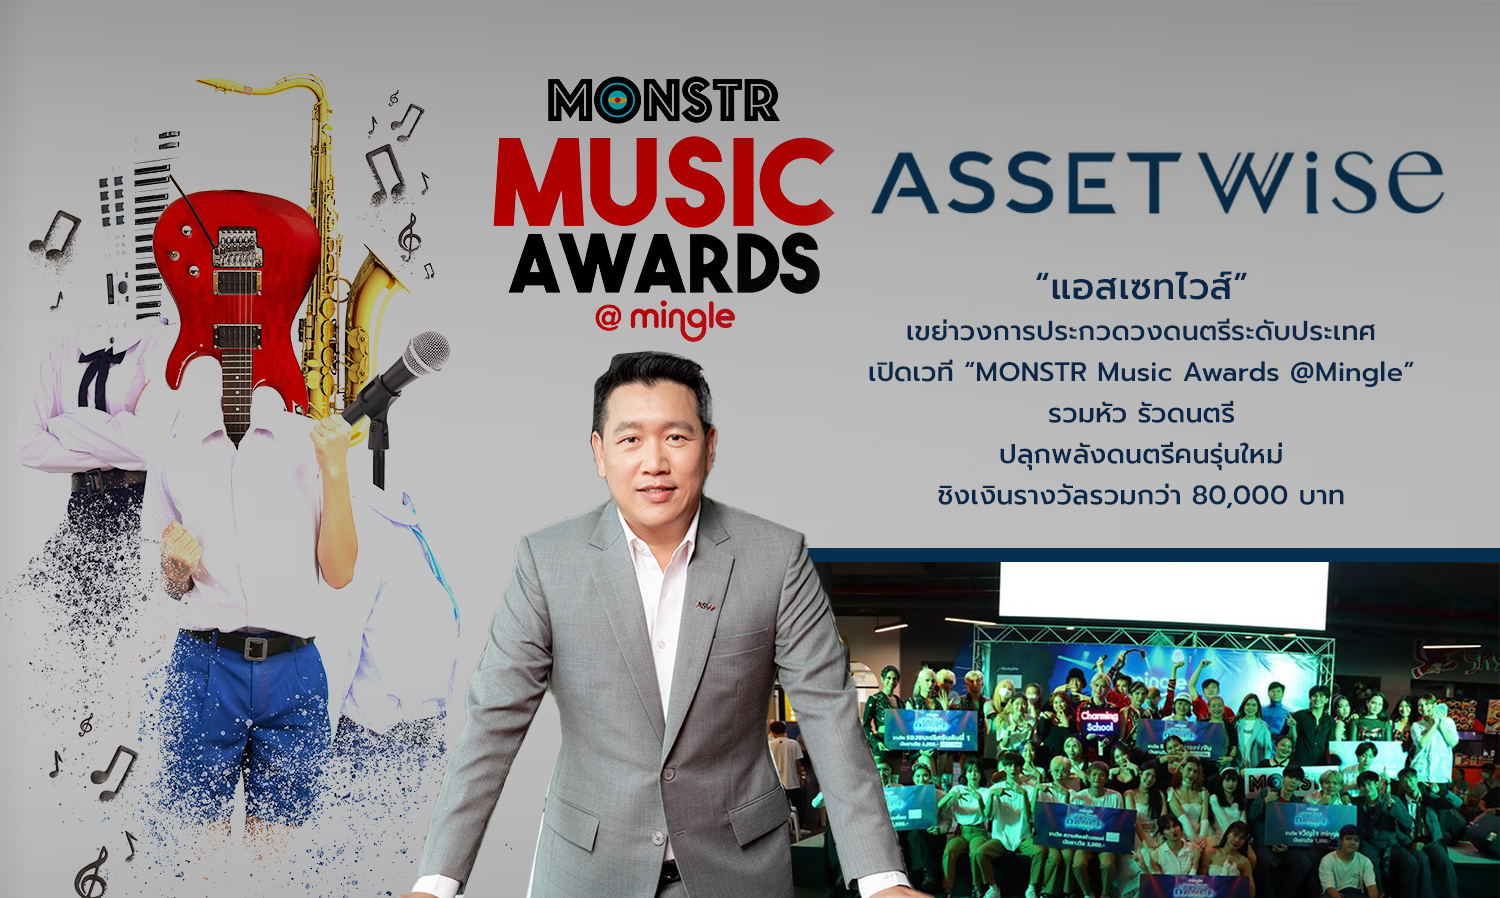 แอสเซทไวส์ เขย่าวงการประกวดวงดนตรีระดับประเทศ เปิดเวที MONSTR Music Awards @Mingle รวมหัว รัวดนตรี ปลุกพลังดนตรีคนรุ่นใหม่ ชิงเงินรางวัลรวมกว่า 80,000 บาท